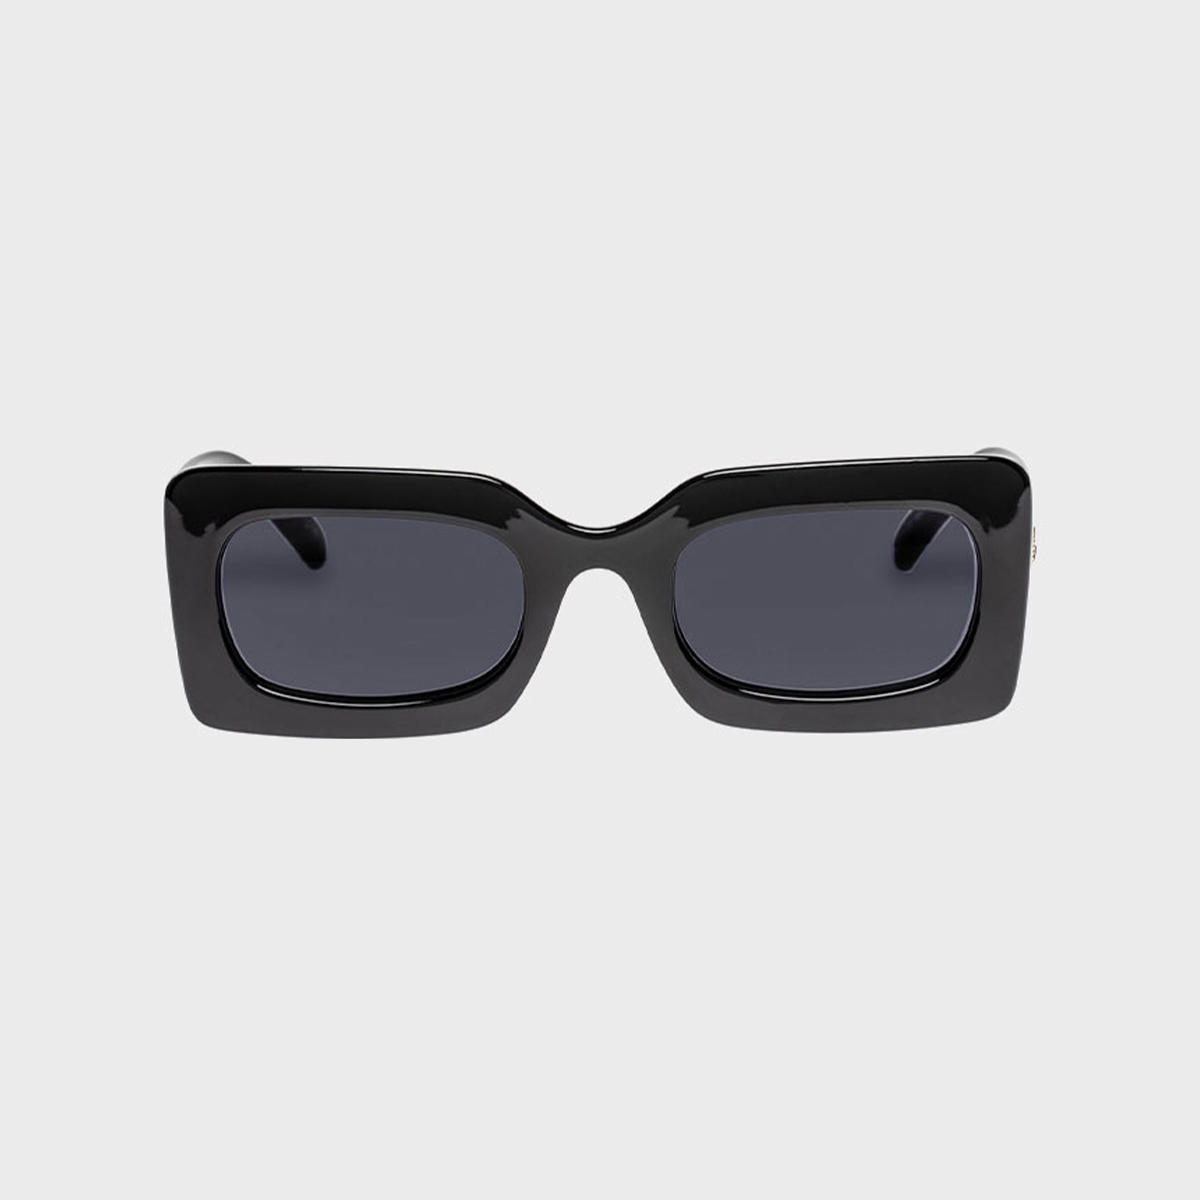 Shop Aviator Sunglasses for Women